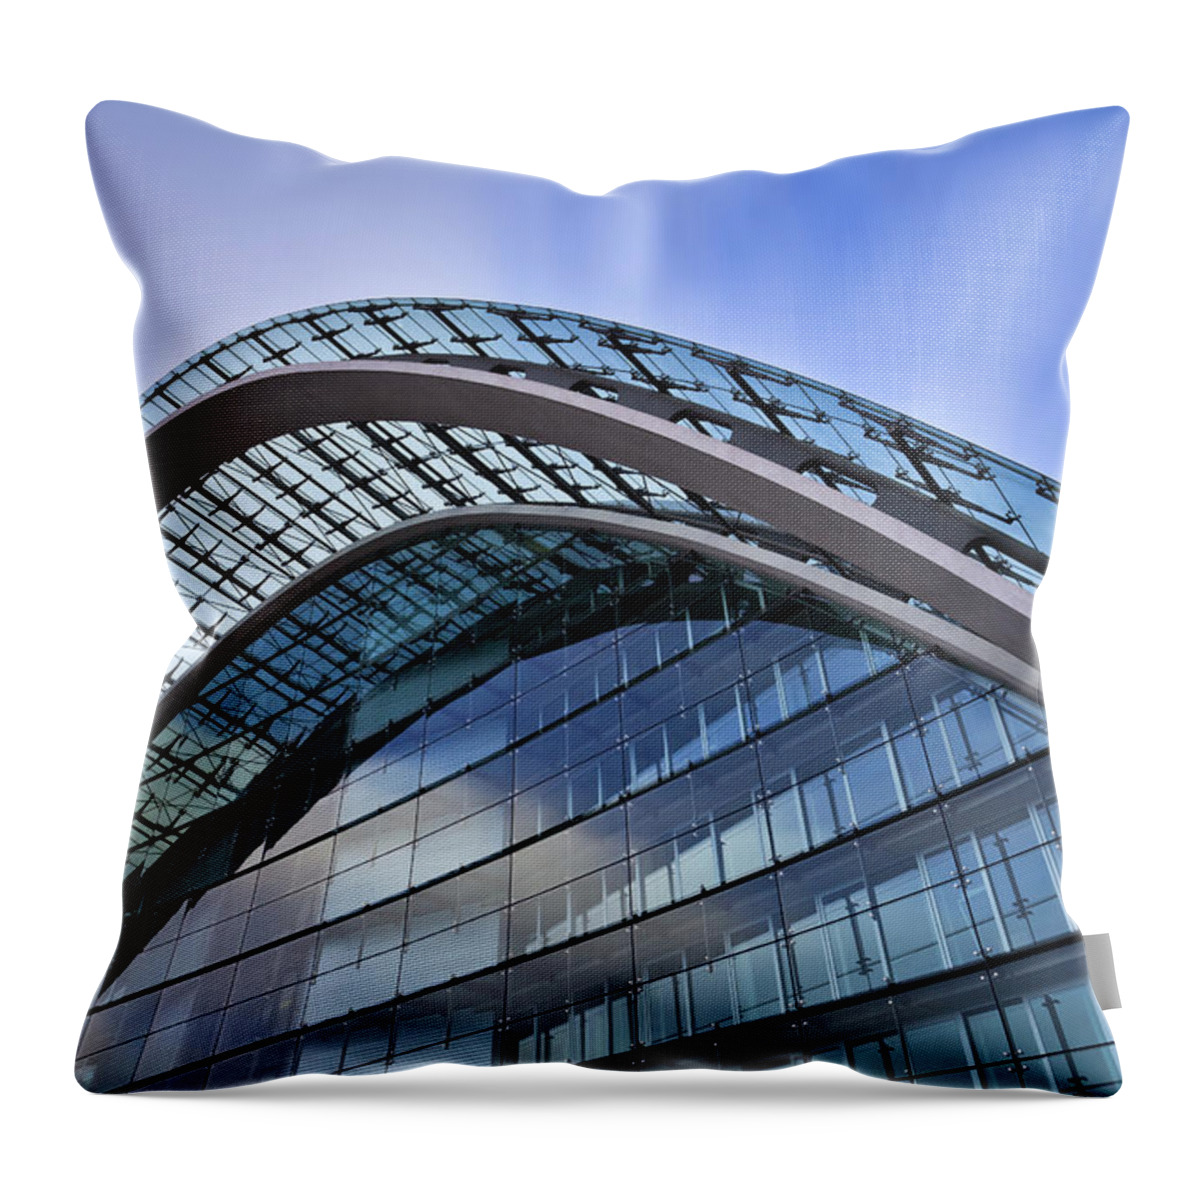 Berlin Throw Pillow featuring the photograph Facade Of An Office Building - Modern by Mf-guddyx